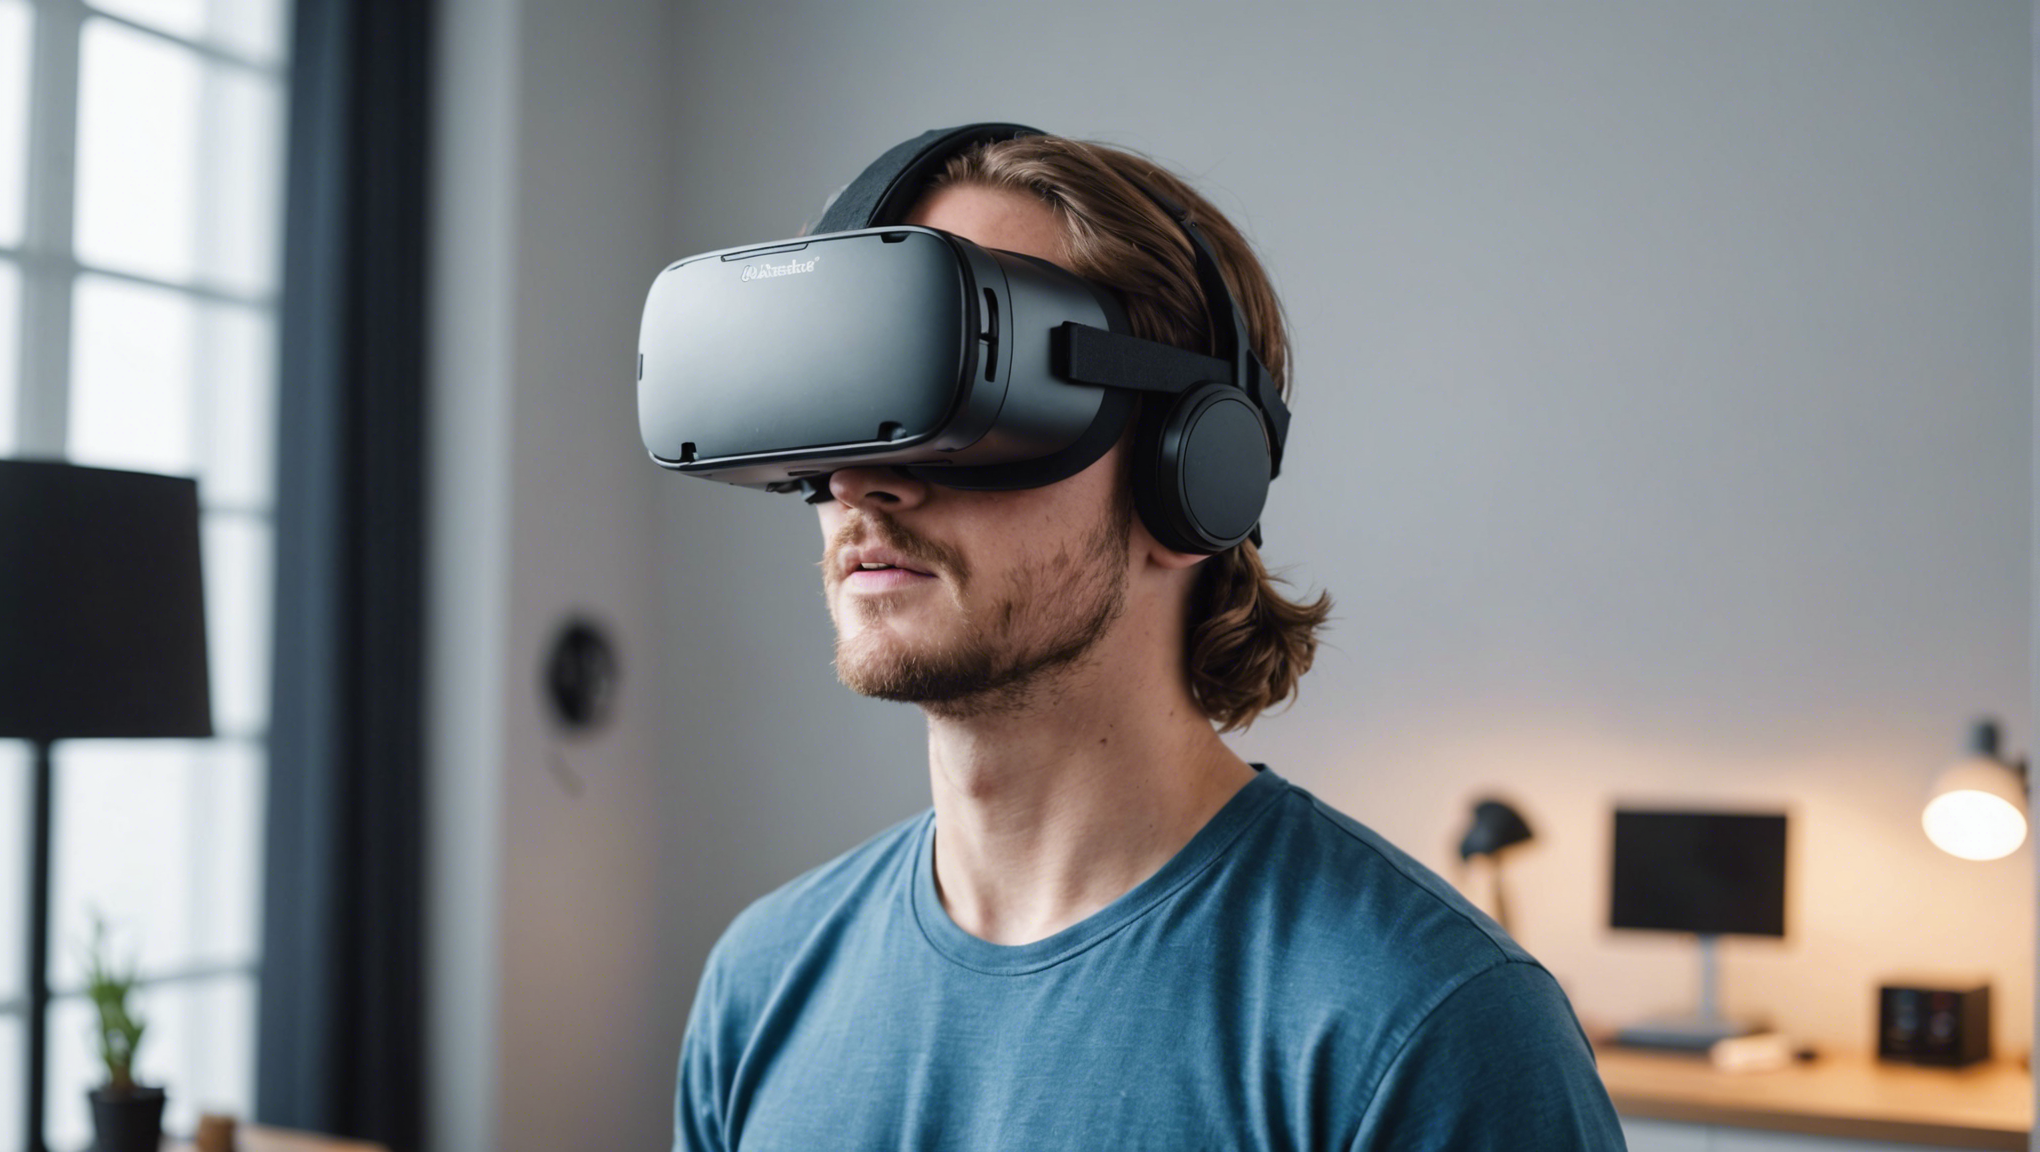 découvrez comment fonctionne la simulation de réalité virtuelle et plongez dans un monde virtuel fascinant grâce à cette innovation technologique révolutionnaire.